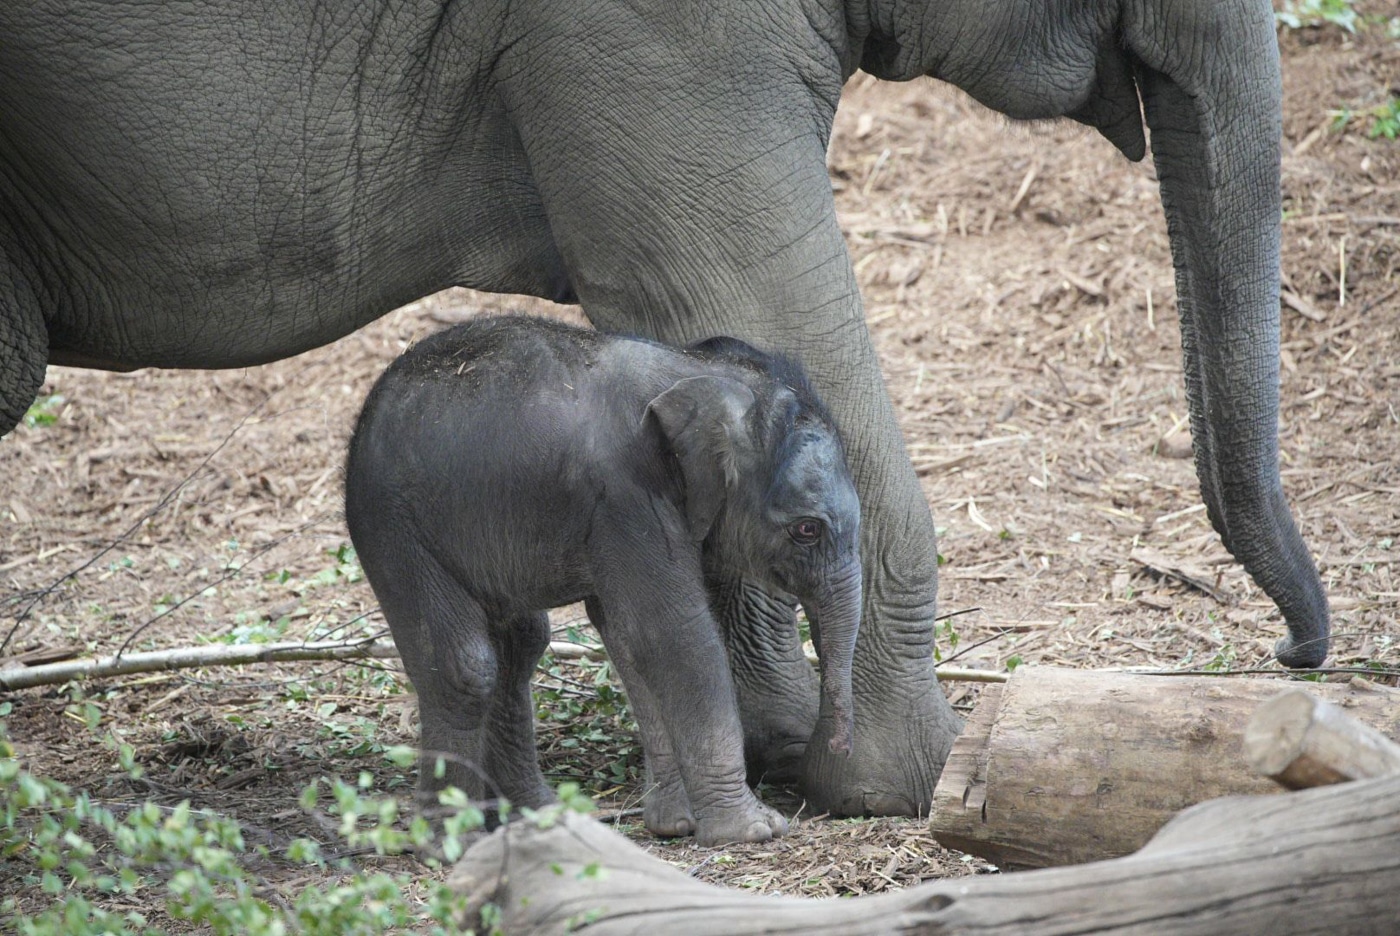 Bei den Asiatischen Elefanten wurde ein noch namenloses Jungtier geboren.